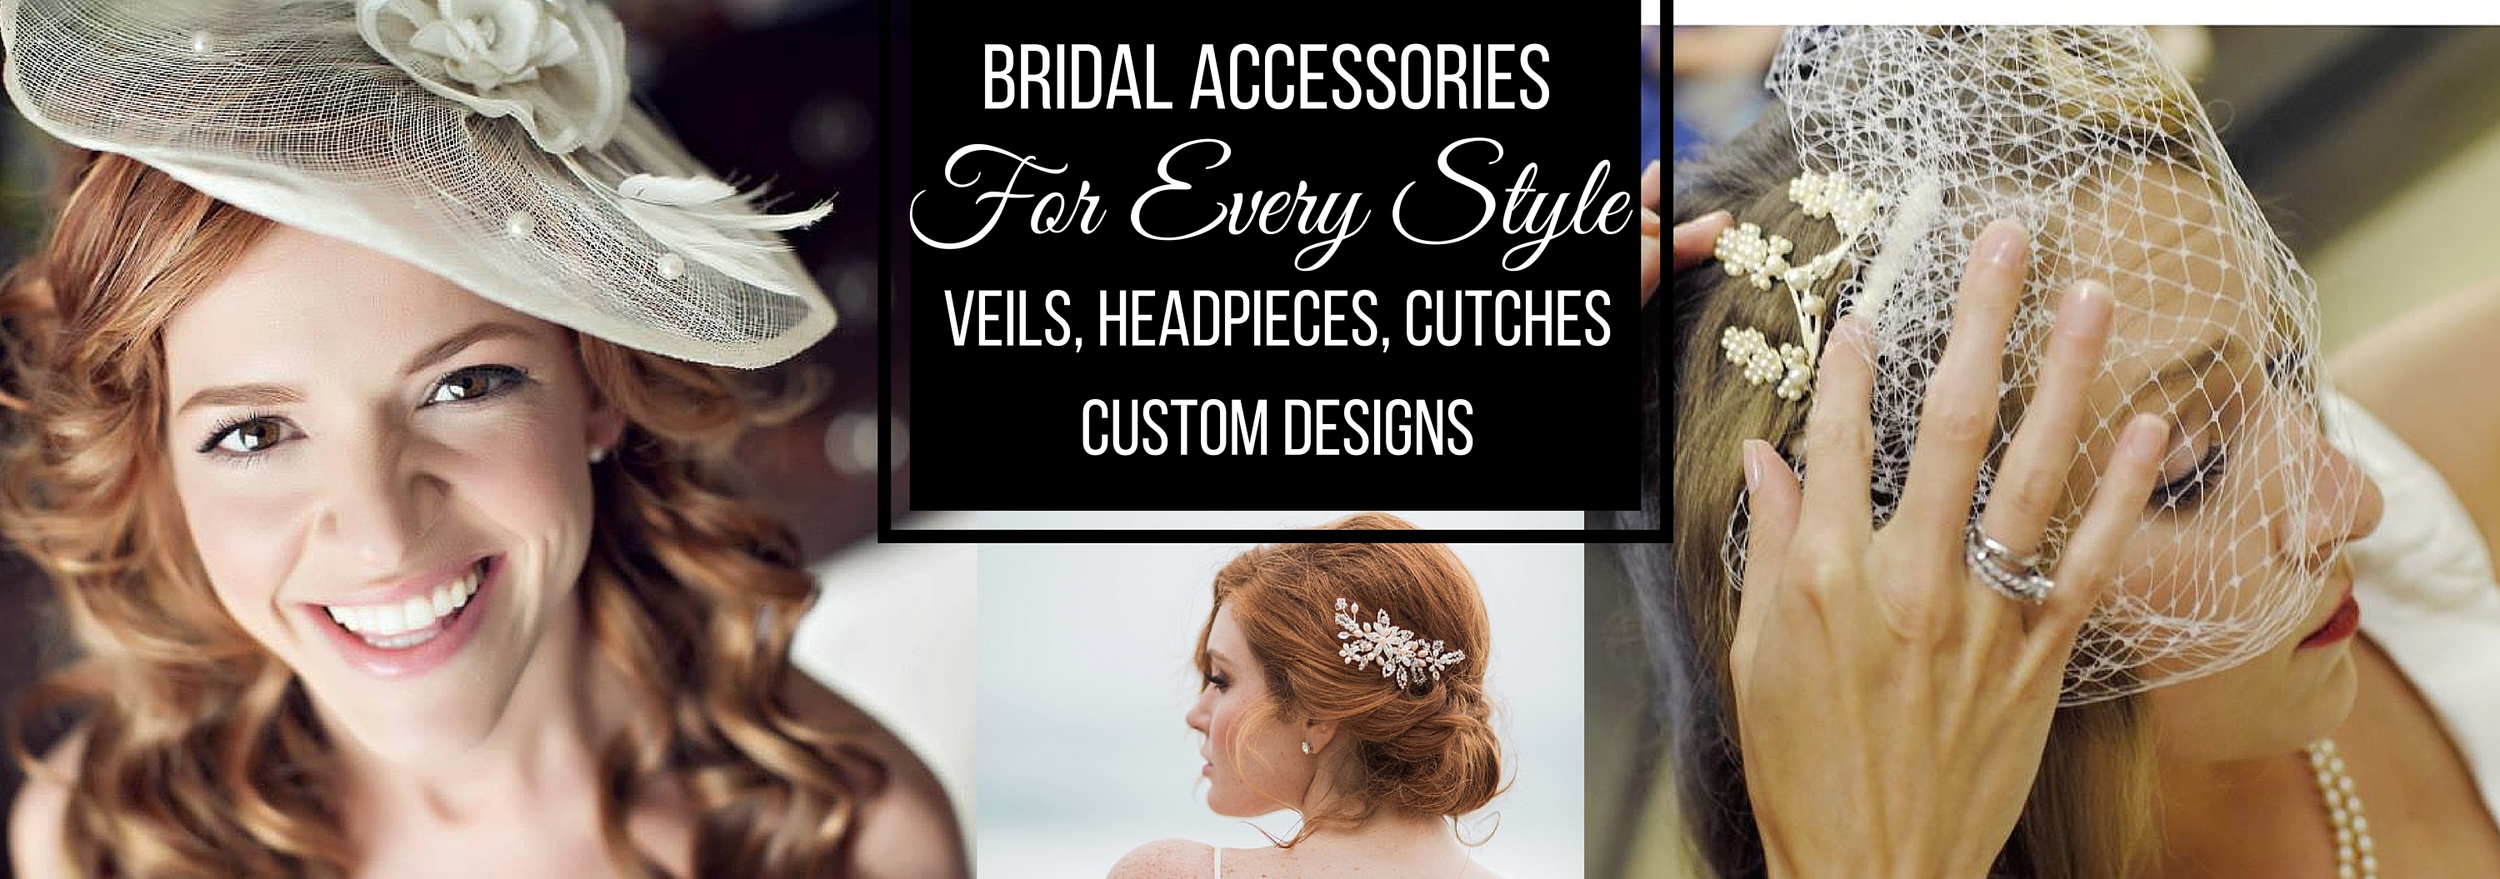 Bridal Accessories Header revised2.jpg